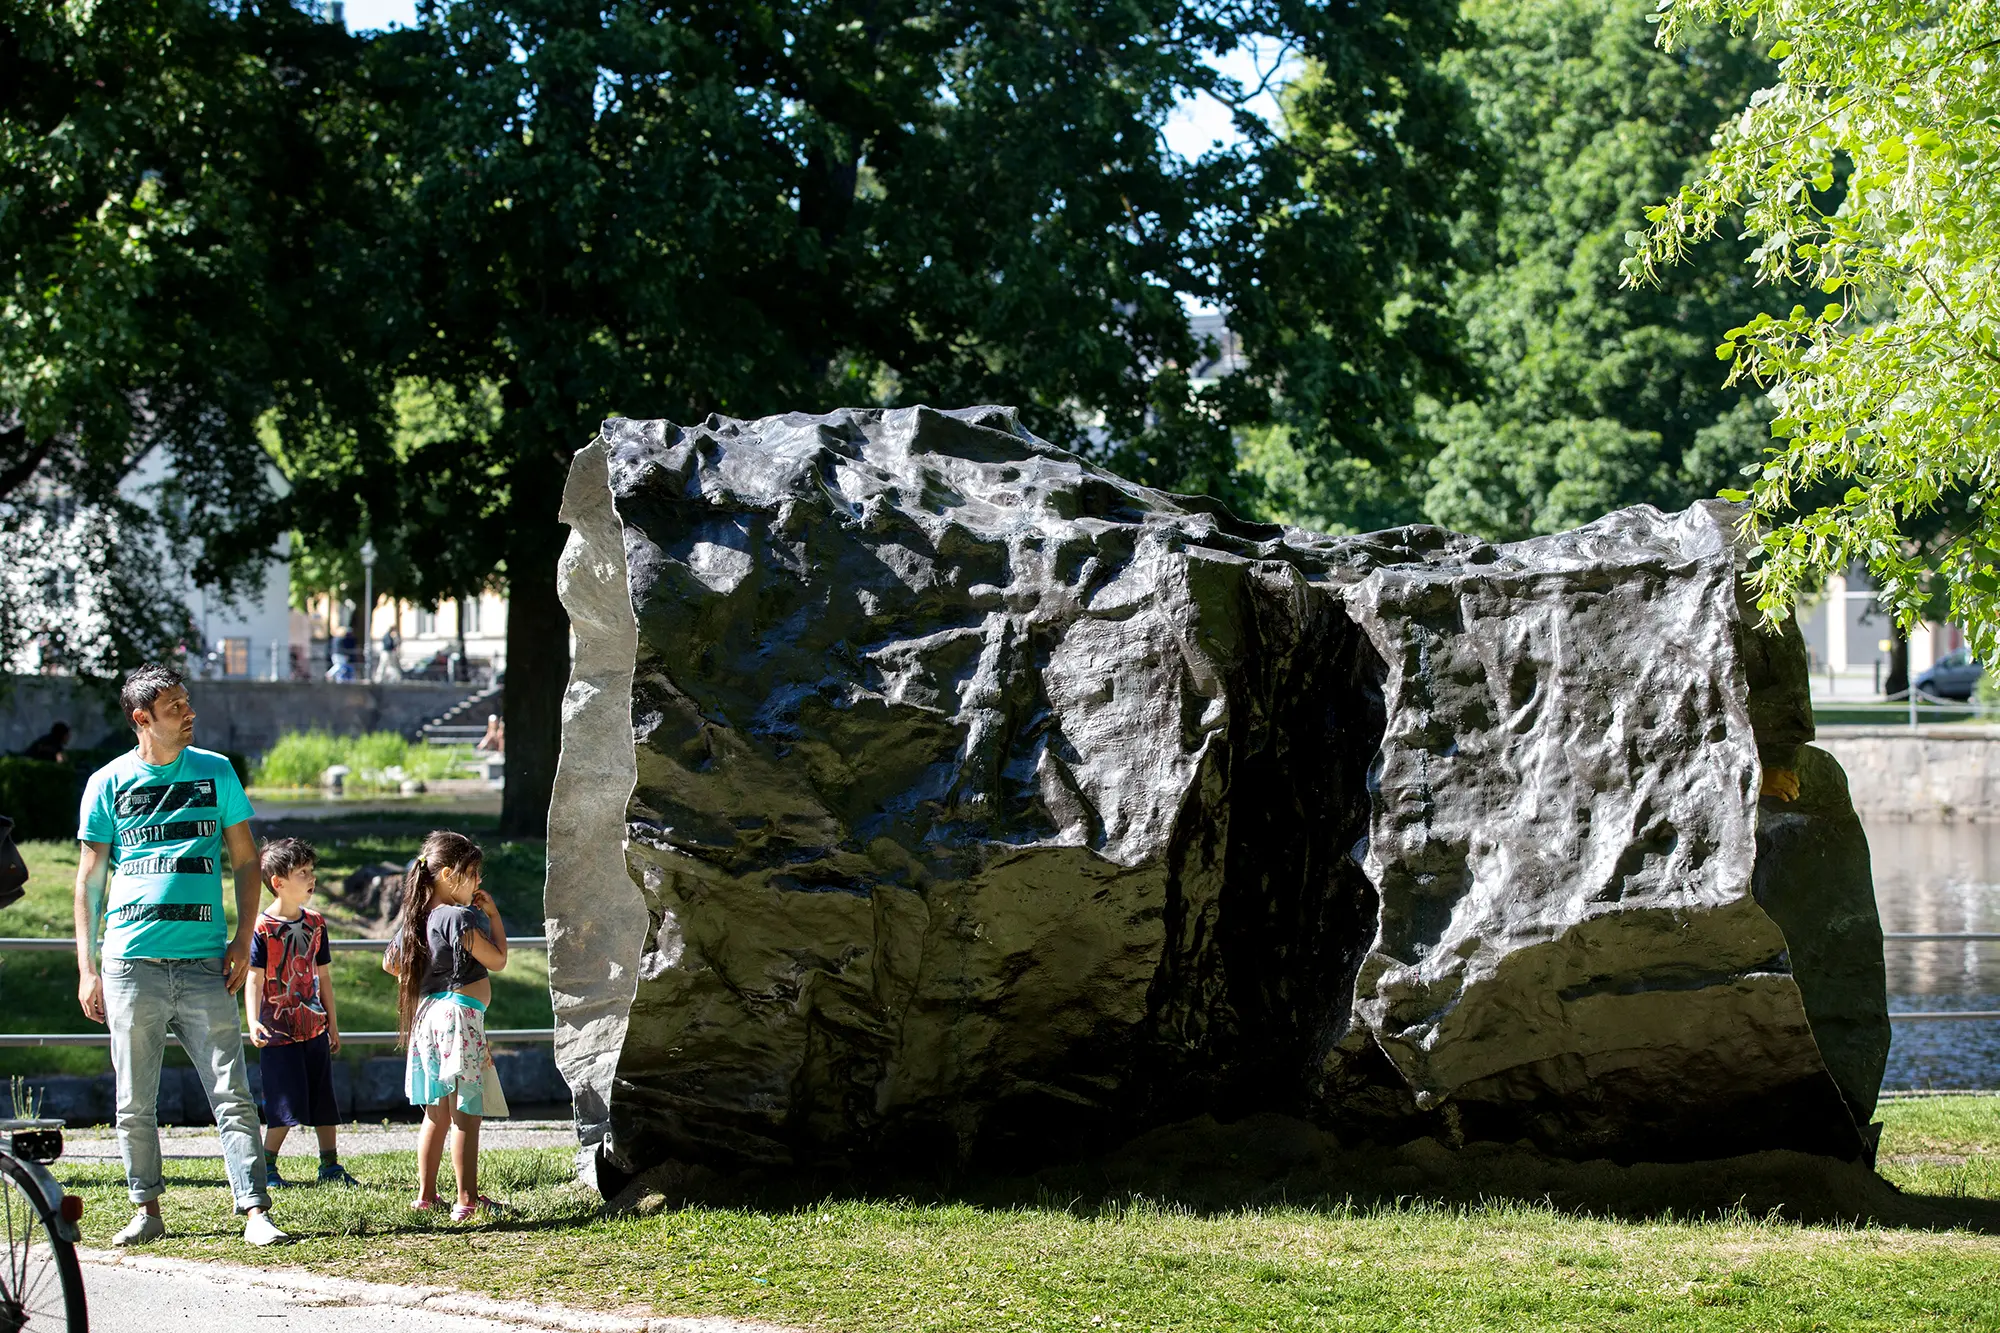 En stor metallskulptur står i en park. Skulpturen har formen av en en ihålig cylinder med ojämn yta. Framför den står en man och två barn och ser på skulpturen.